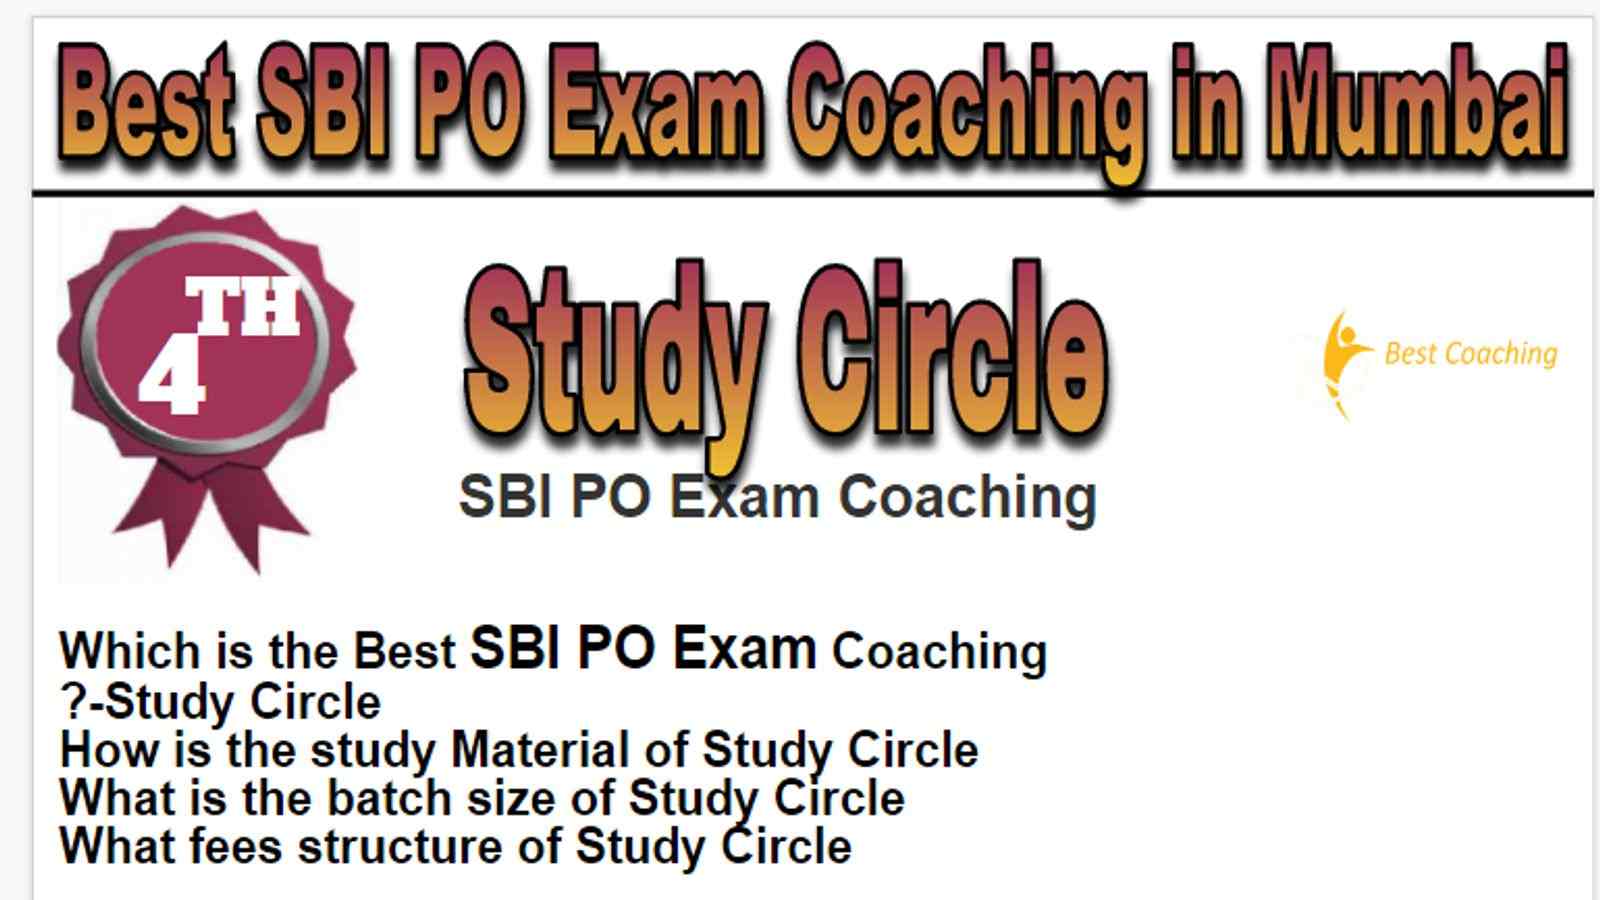 Rank 4 Best SBI PO Exam Coaching in Mumbai